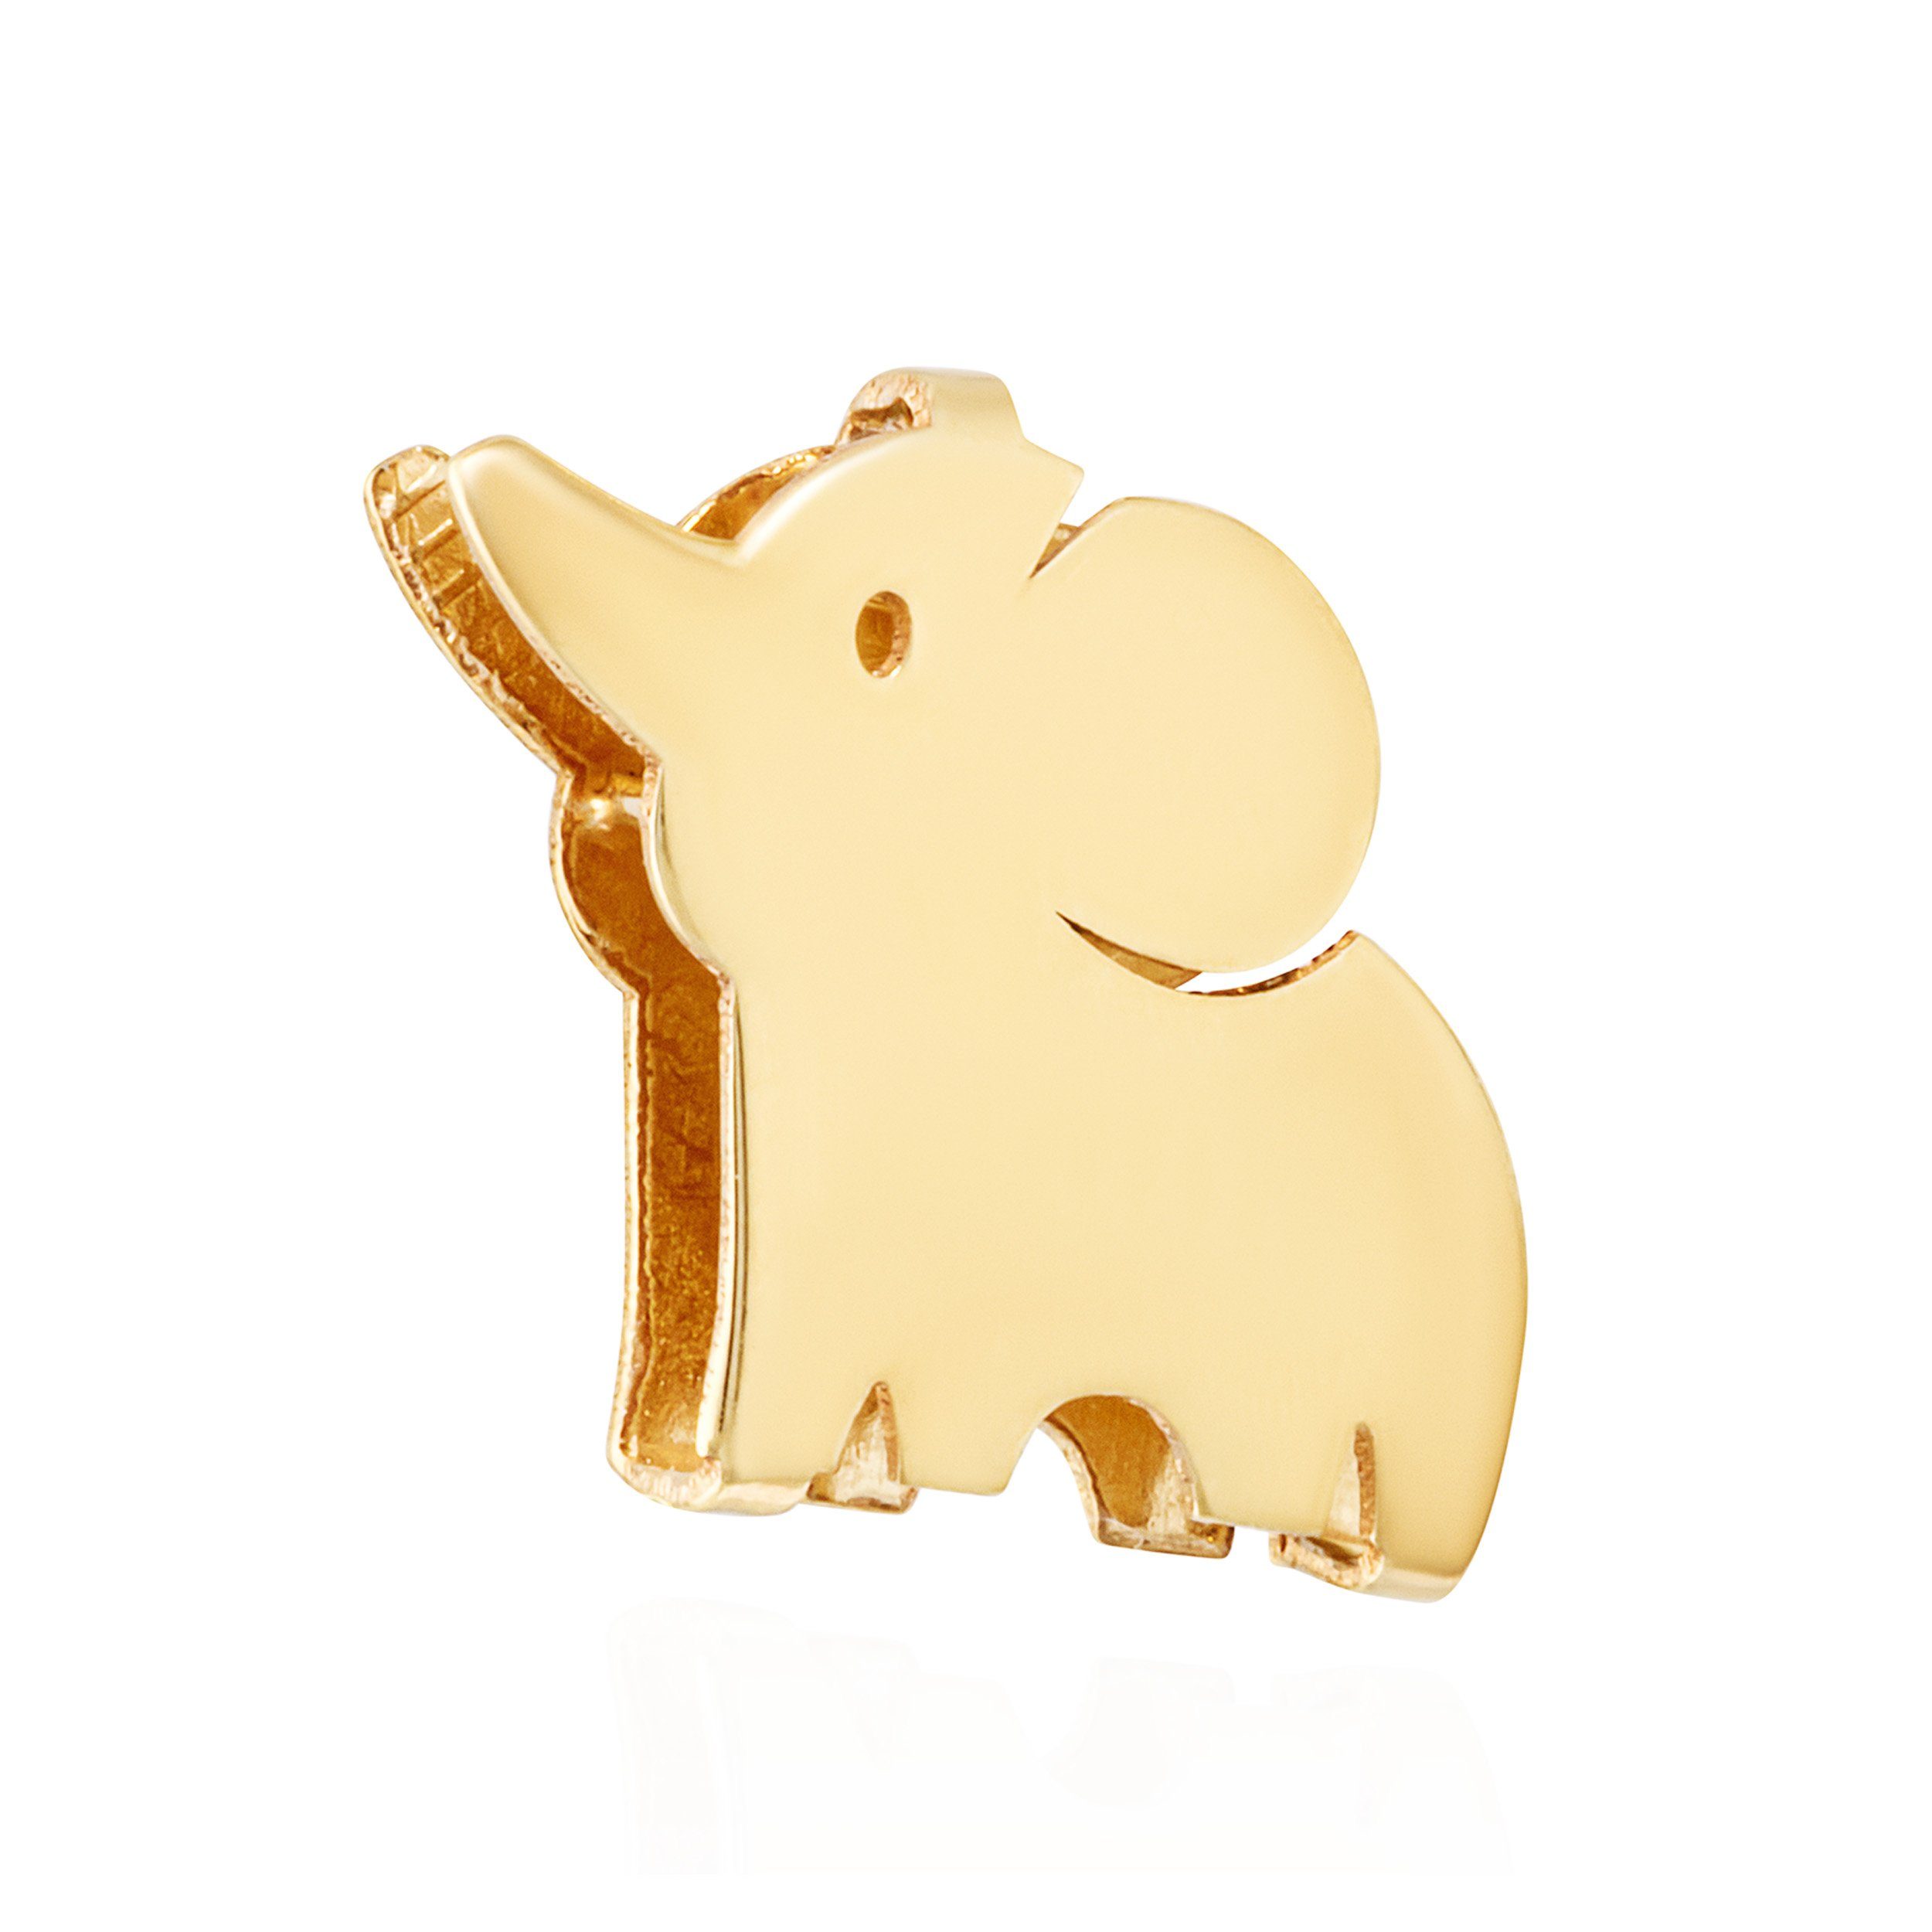 NKlaus Kettenanhänger Kettenanhänger Elefant 333 Gelb gold 8 Karat 7,5x7mm Amulett Anhänger